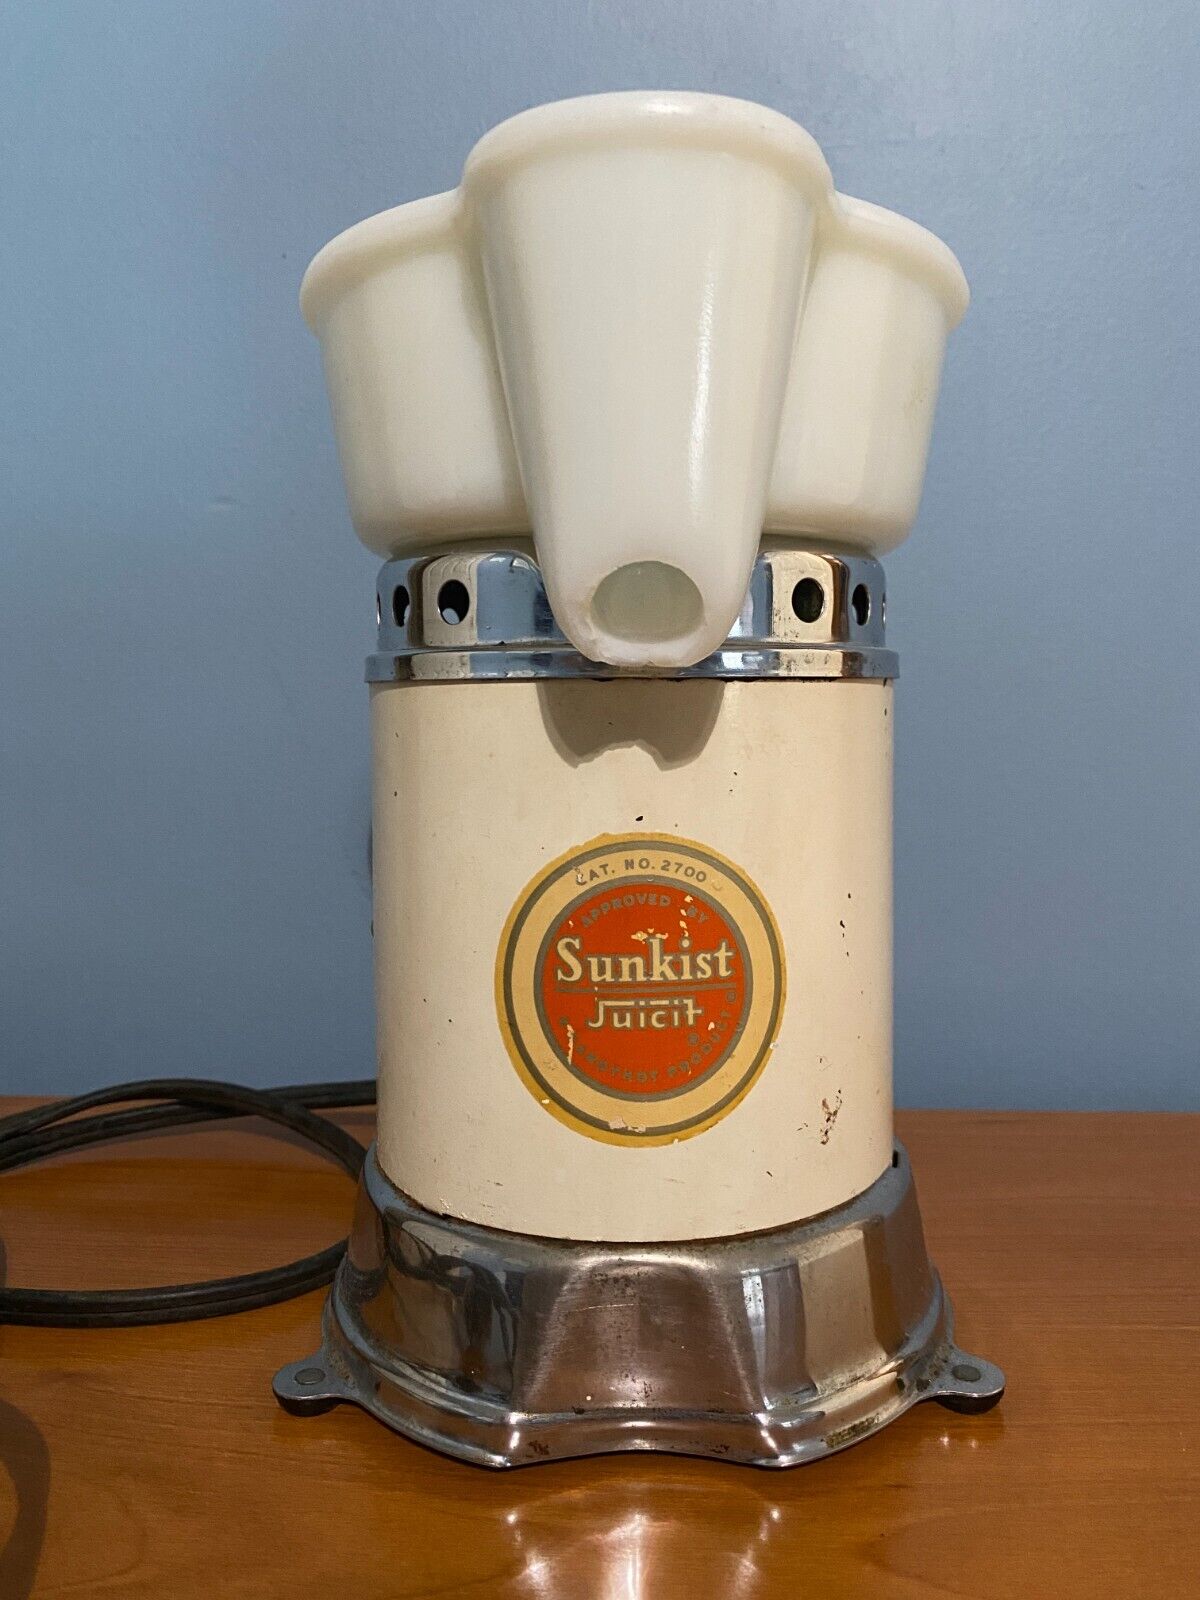 Vintage 1930-40's Sunkist Juicit Electric Juicer Cat. No. 2700